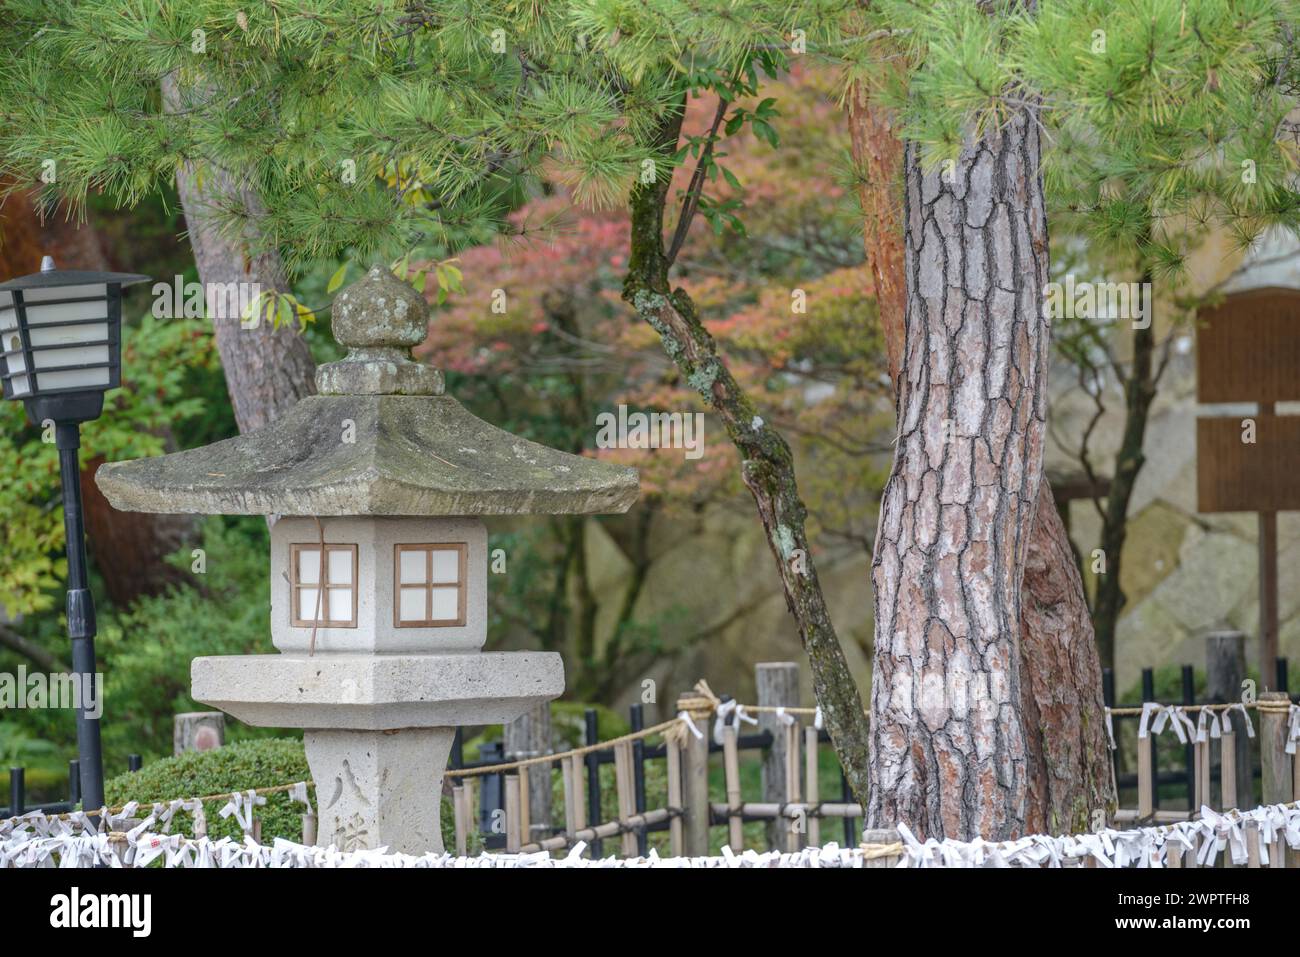 Japanese red pine (Pinus densiflora), Rikugien Garden, Takayama, Honshu, Japan Stock Photo